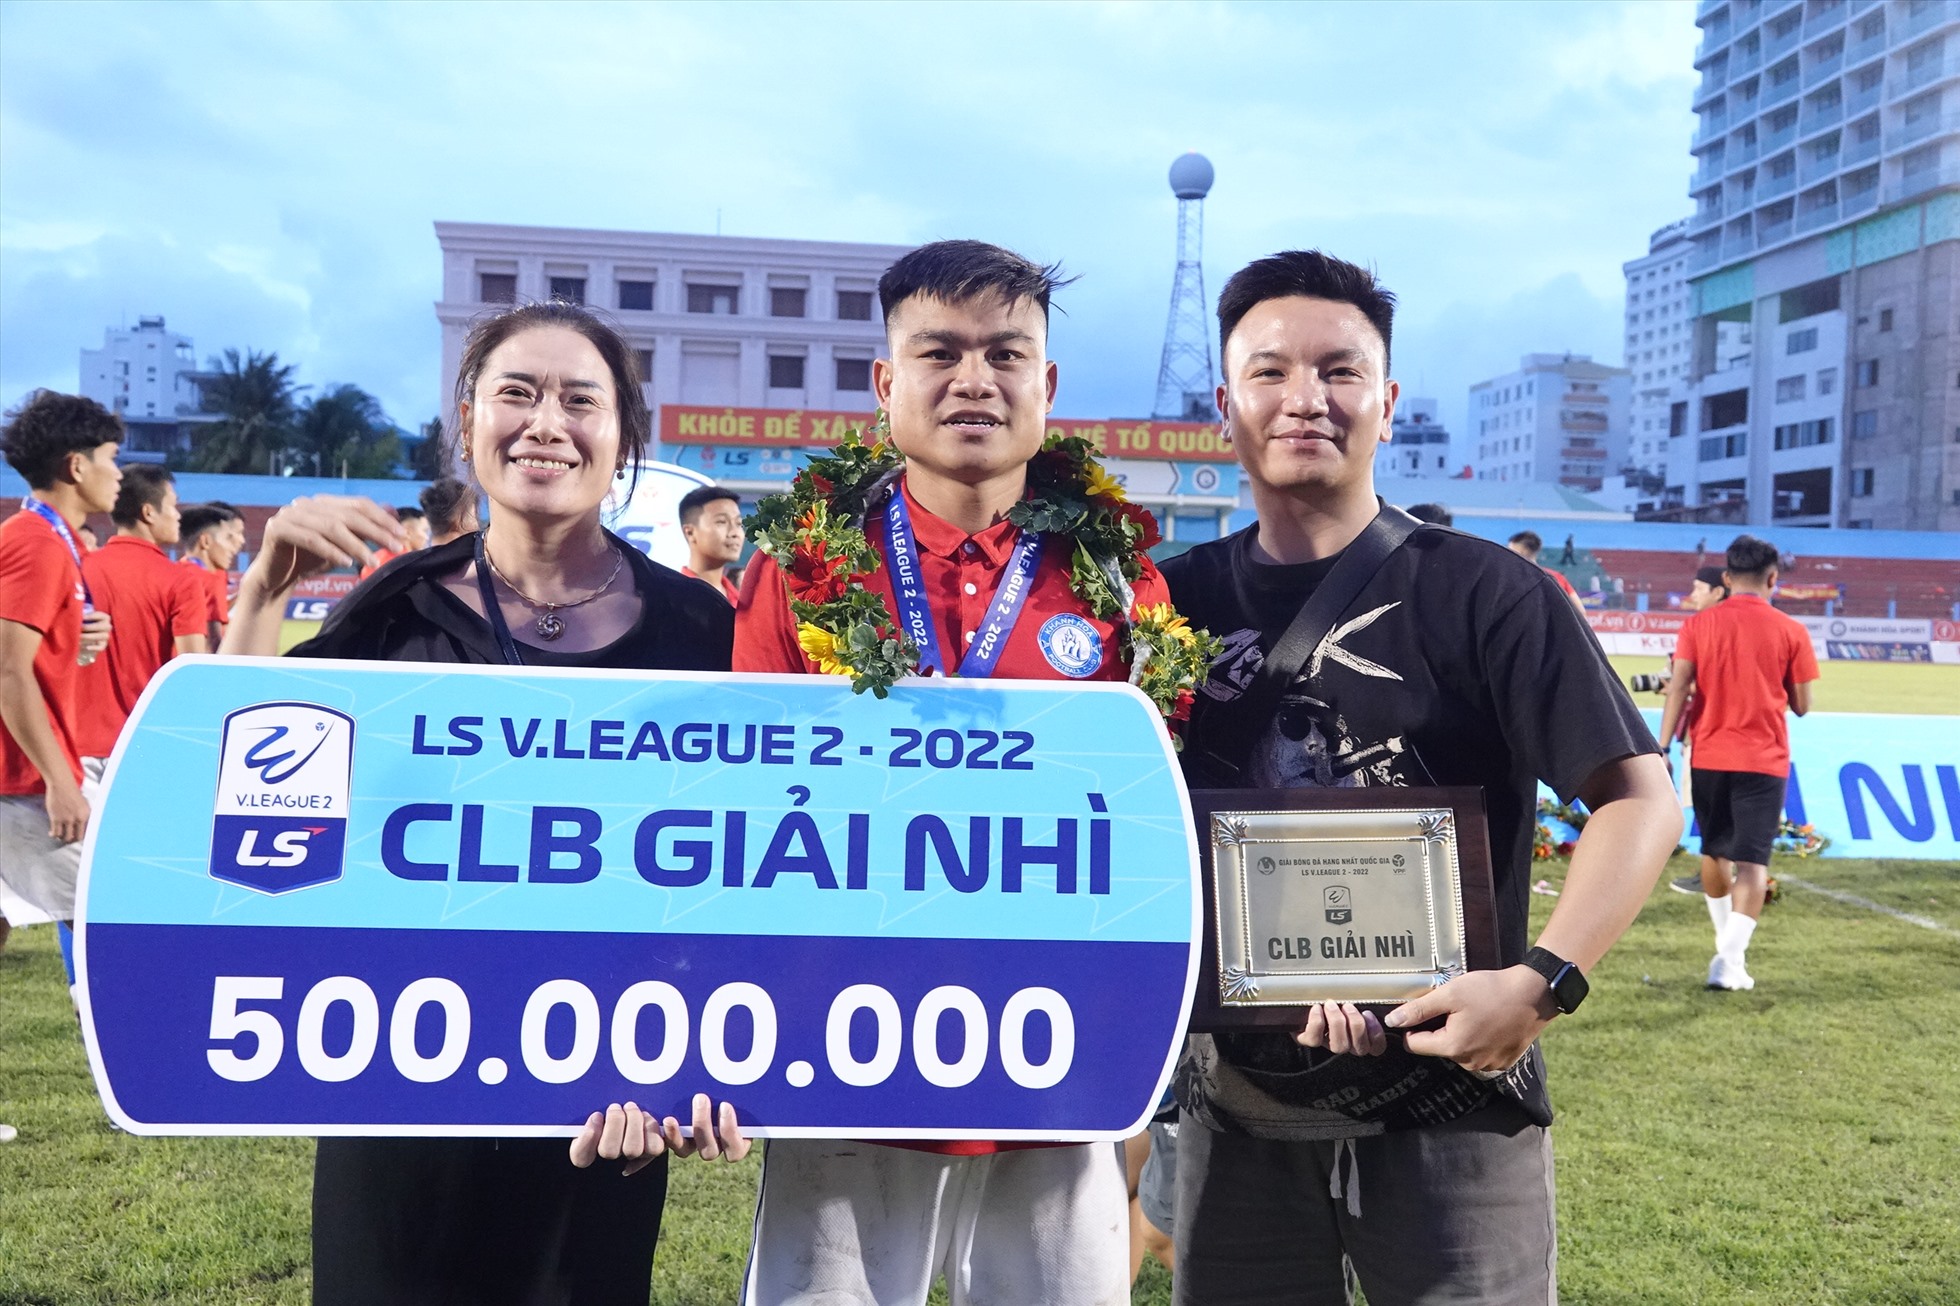 Tiền đạo Nguyễn Hữu Khôi chia vui cùng người thân trong gia đình. Ở mùa bóng vừa qua, Hữu Khôi là cầu thủ ghi bàn nhiều thứ 2 của đội với 6 bàn thắng, chỉ kém Lê Thanh Bình (9 bàn).